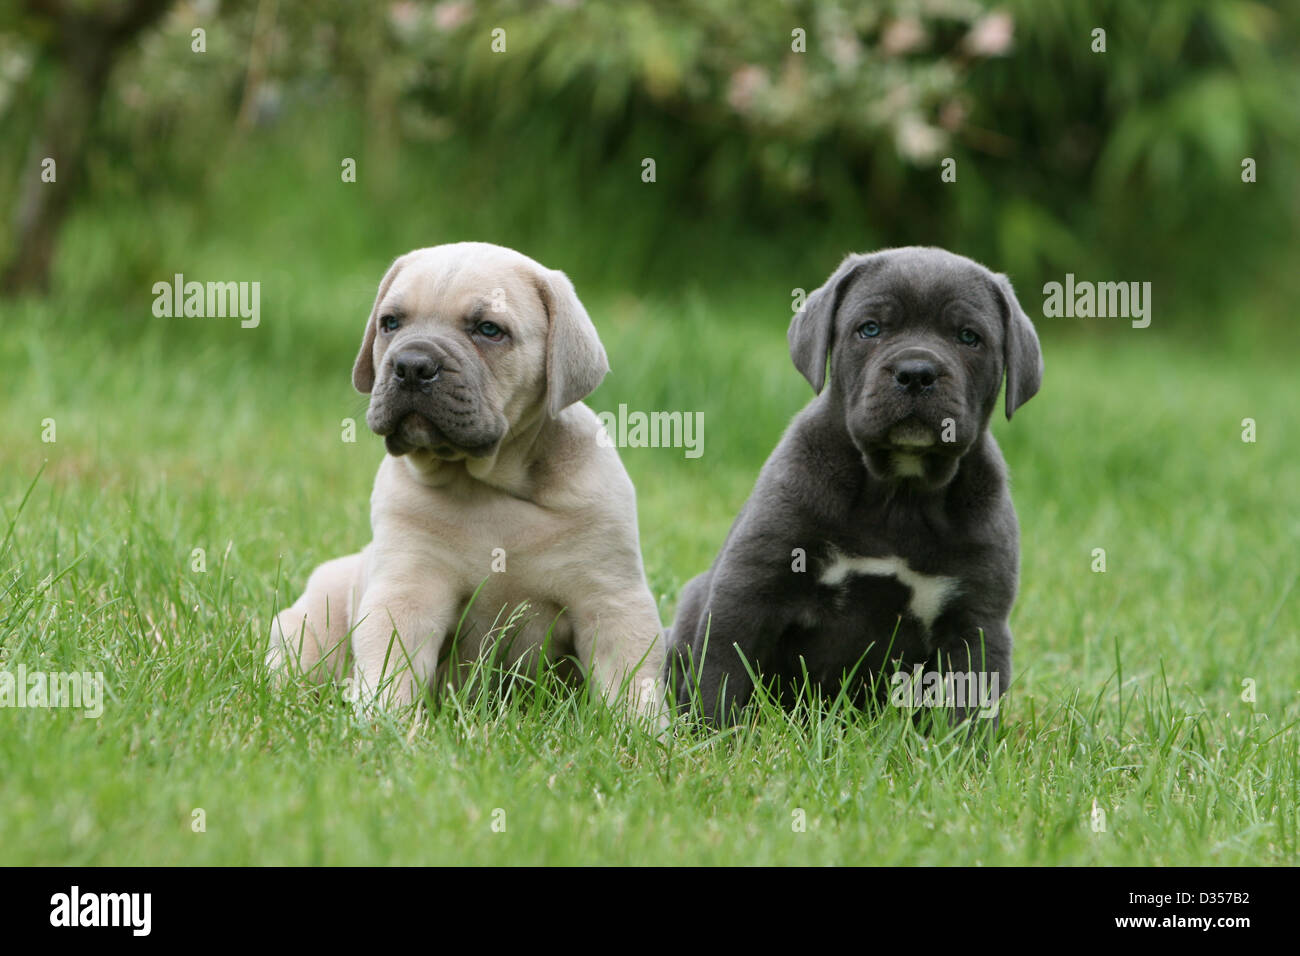 Hund Cane Corso / italienischen Molosser zwei Welpen verschiedene Farben in  einem Garten sitzen Stockfotografie - Alamy